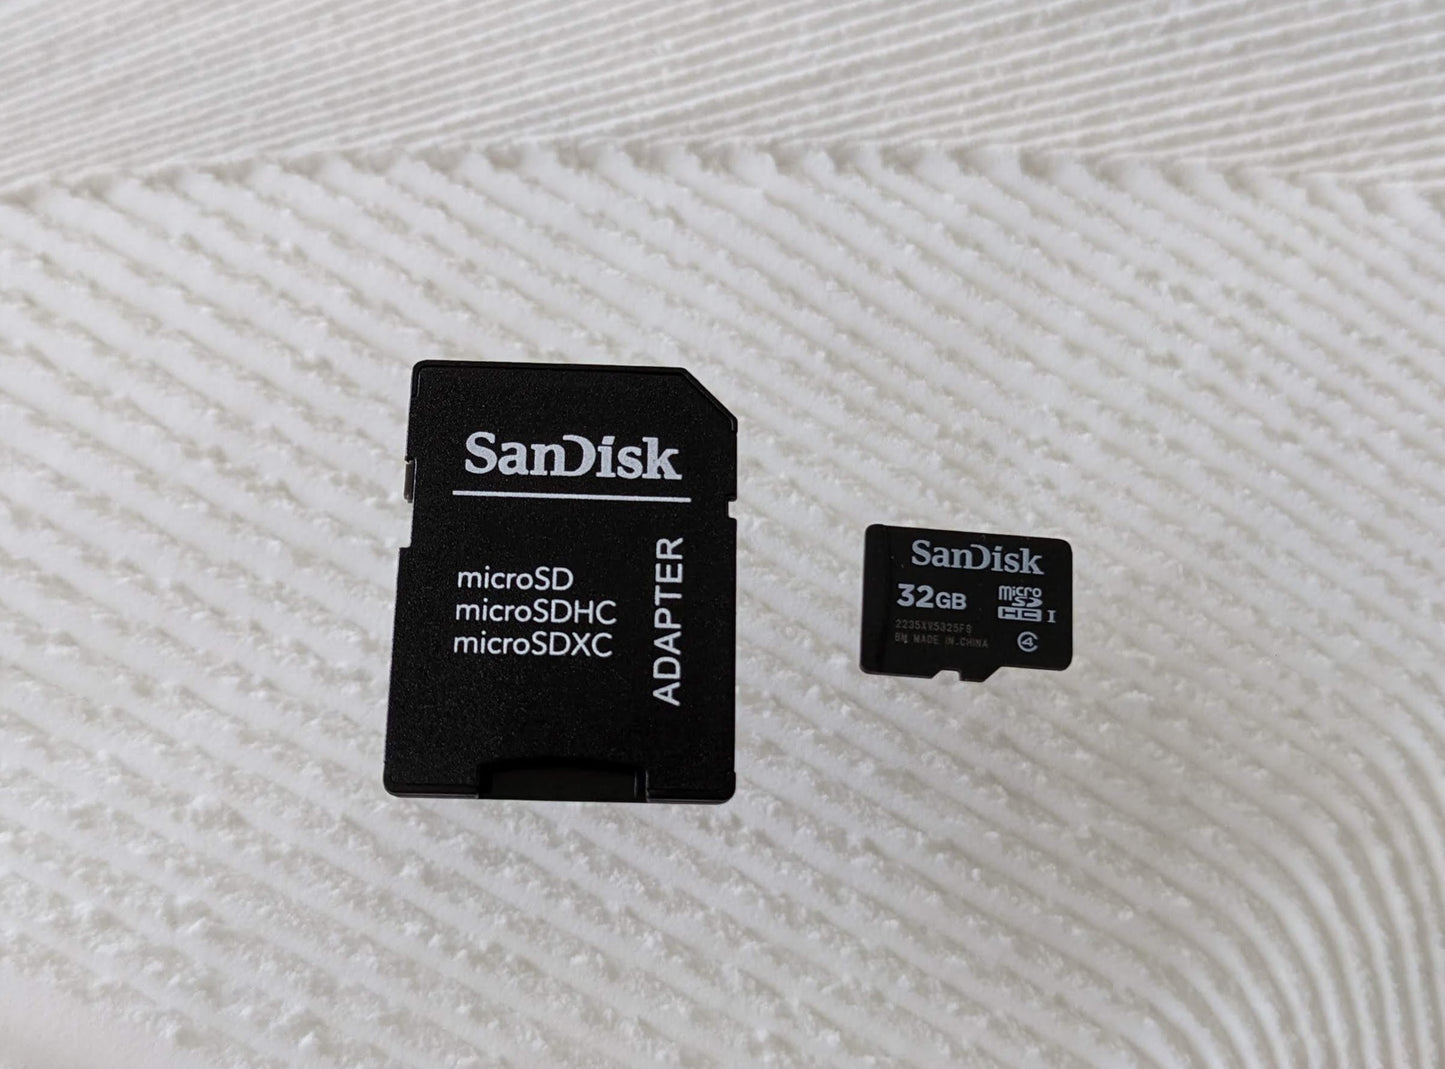 SD Card 32GB